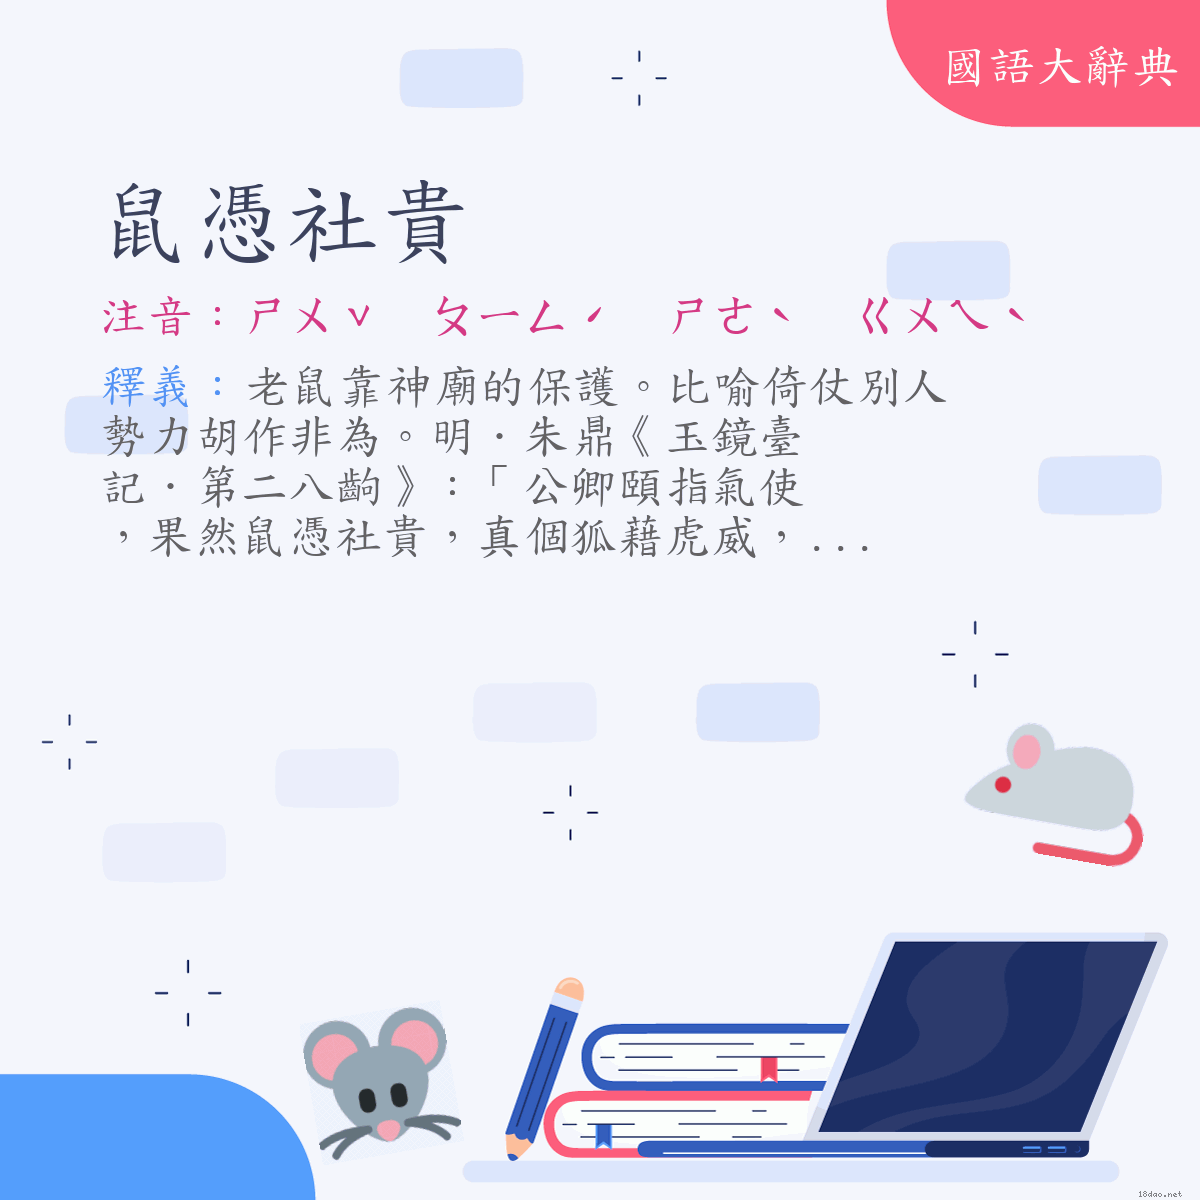 詞語:鼠憑社貴 (注音:ㄕㄨˇ　ㄆㄧㄥˊ　ㄕㄜˋ　ㄍㄨㄟˋ)